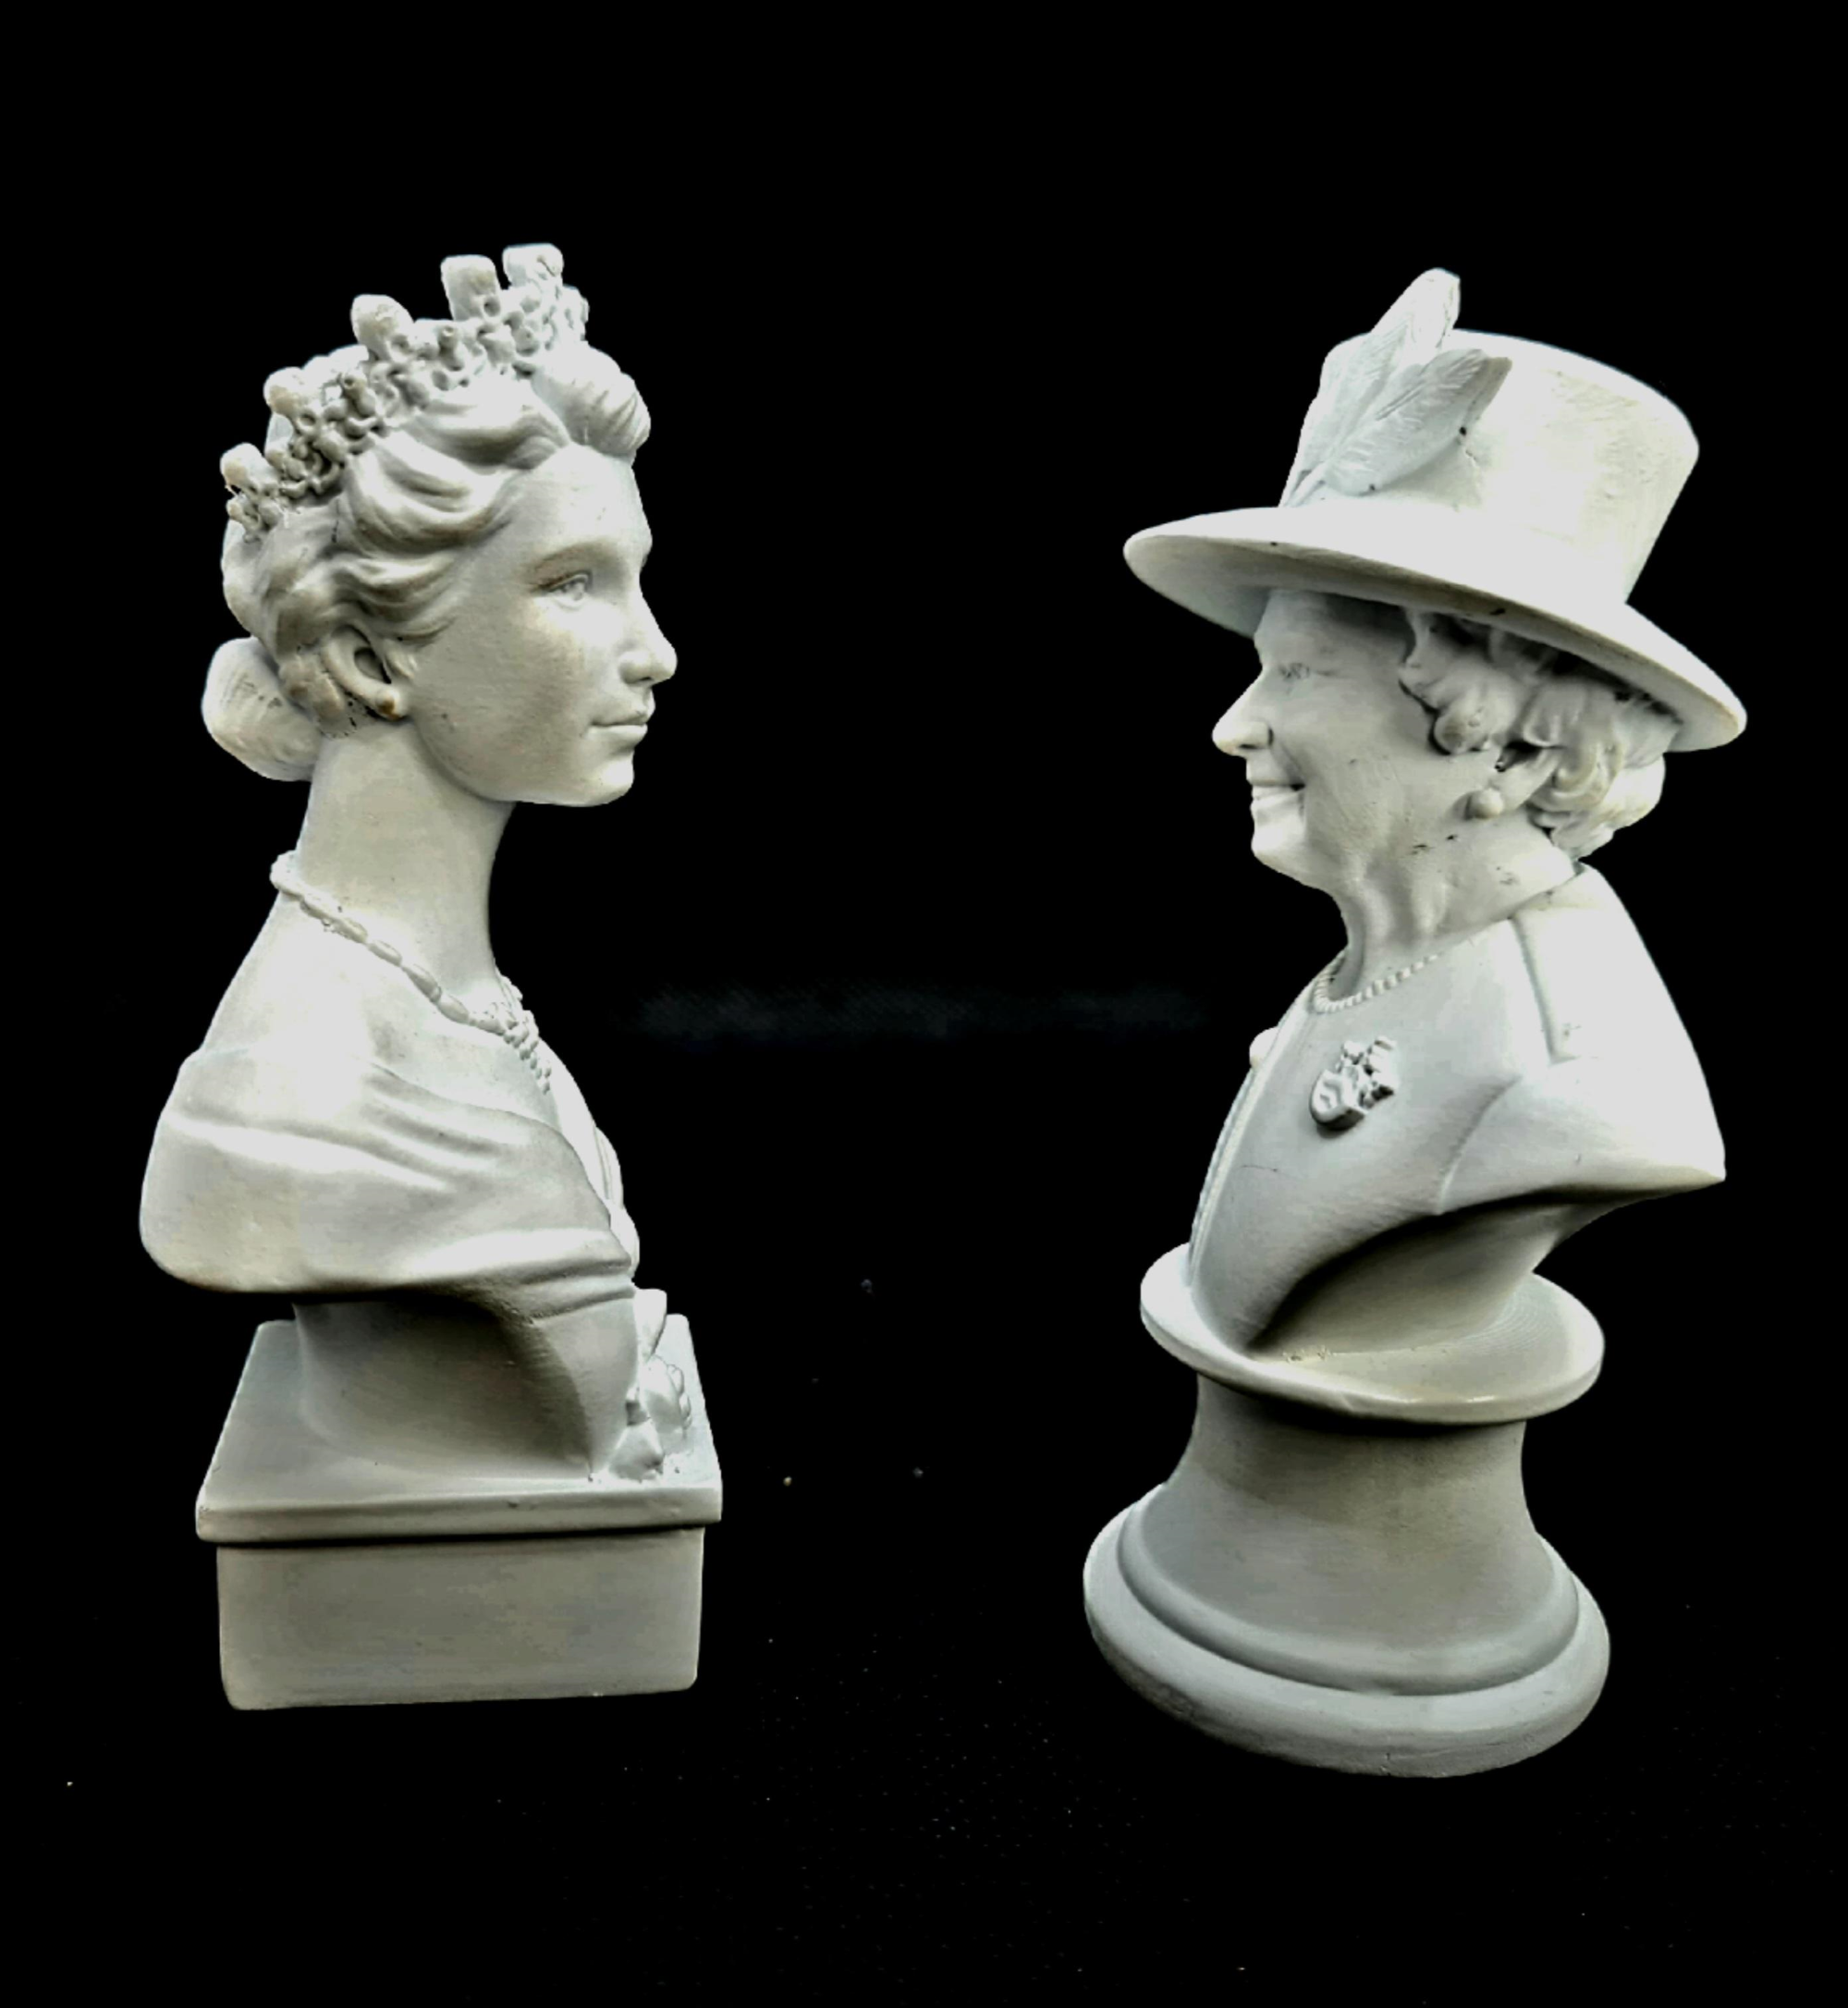 Queen Elizabeth II Figurines Set of 2